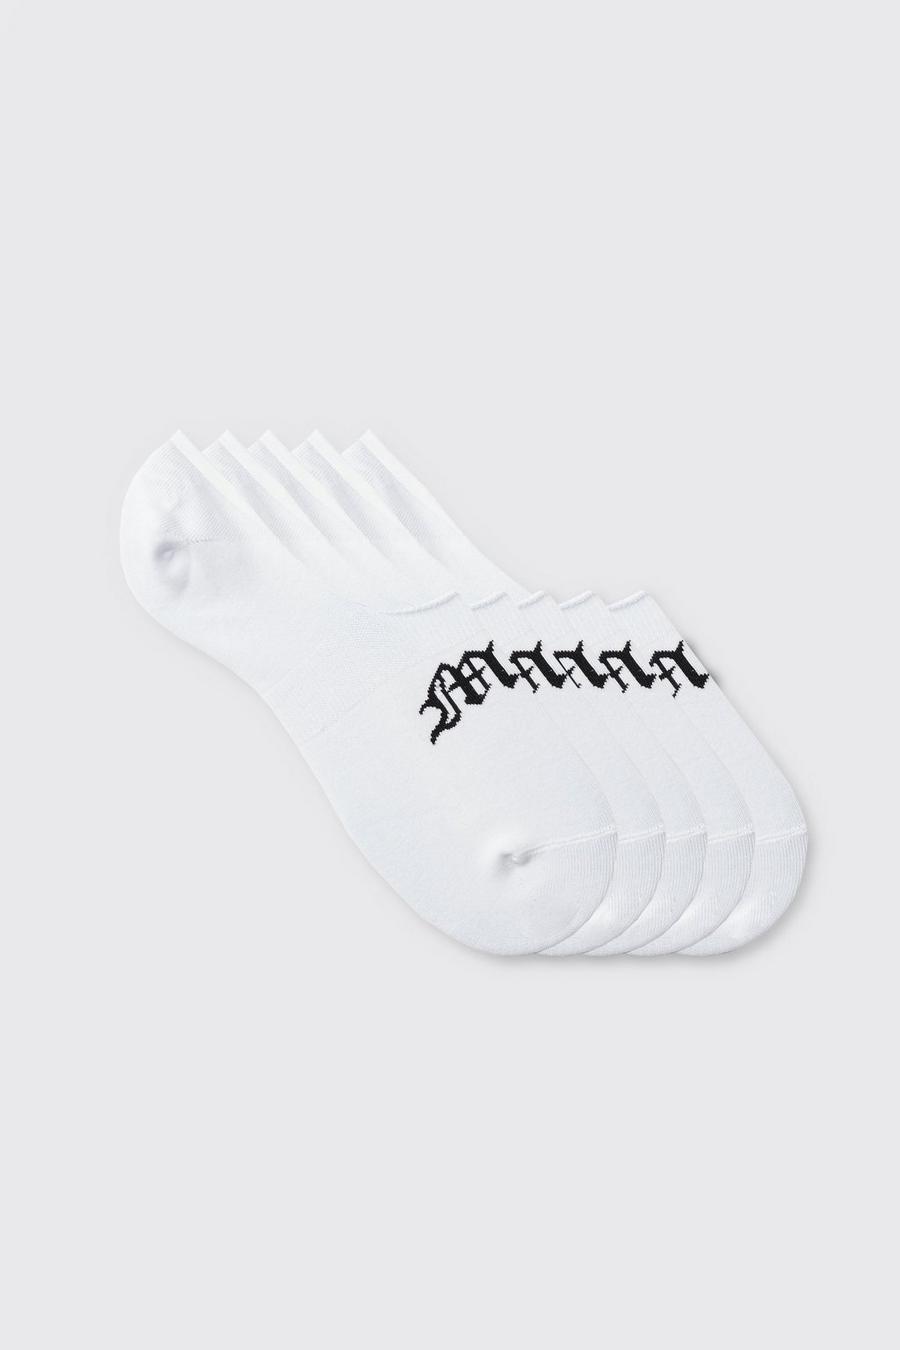 5er-Pack unsichtbare Gothic Man Socken, White